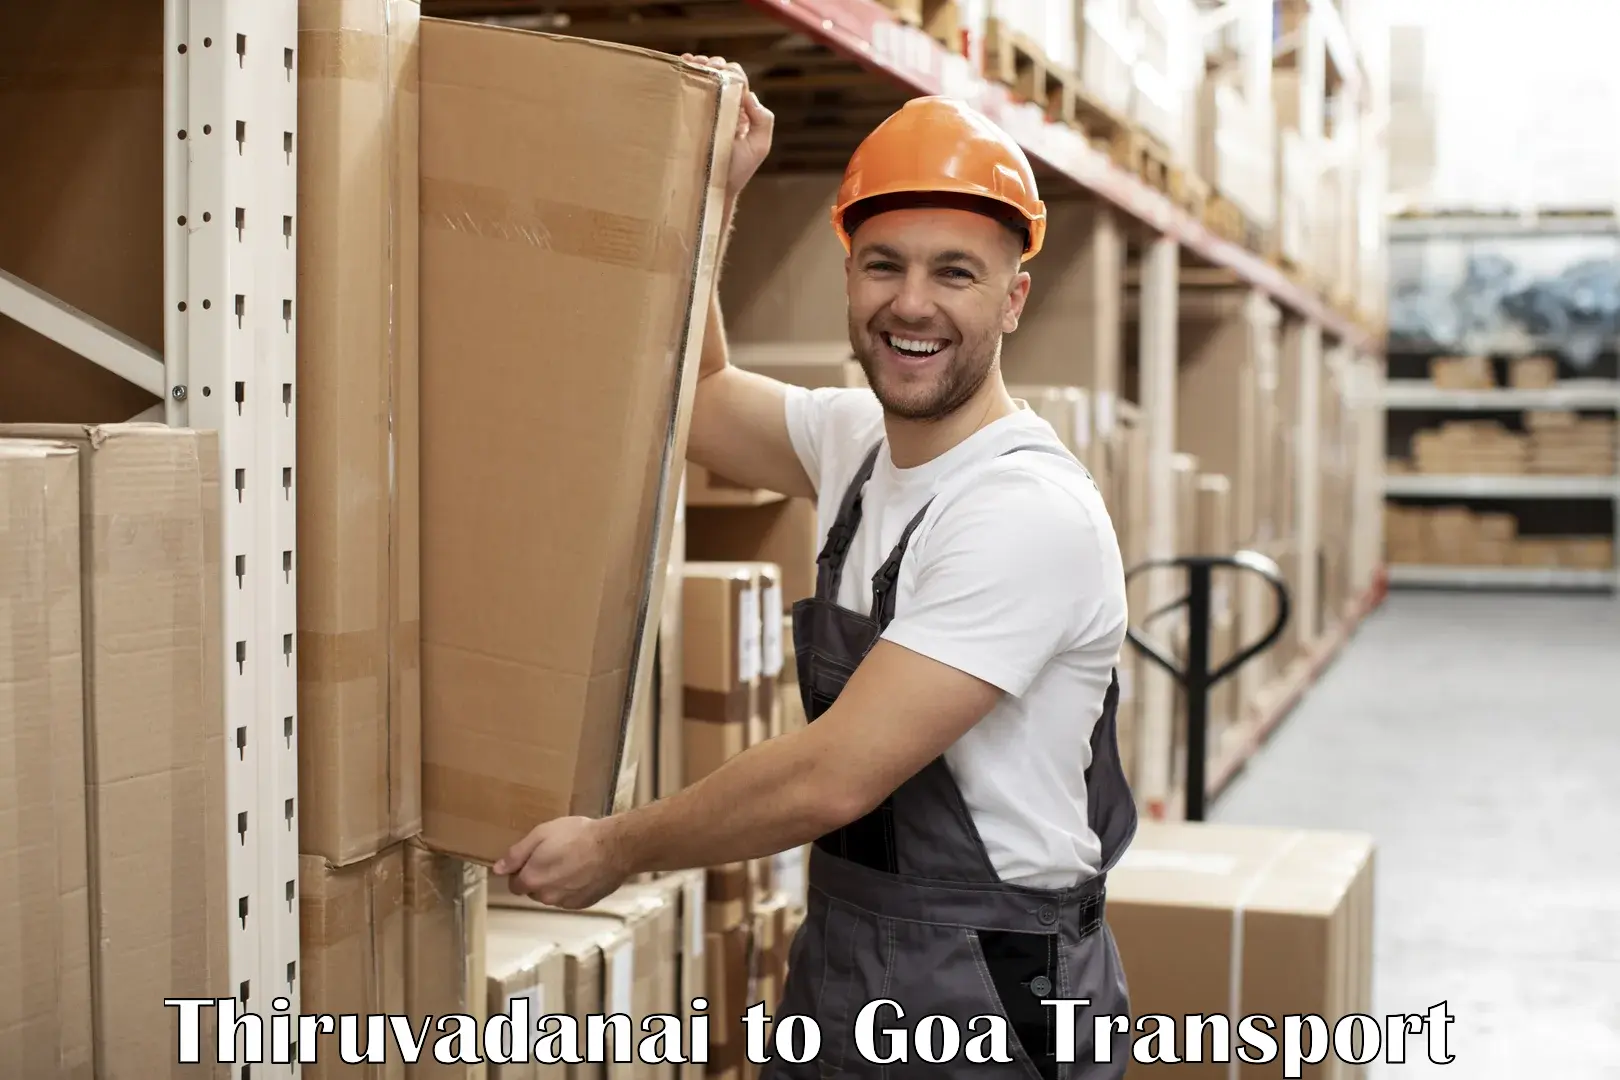 Container transport service Thiruvadanai to Ponda